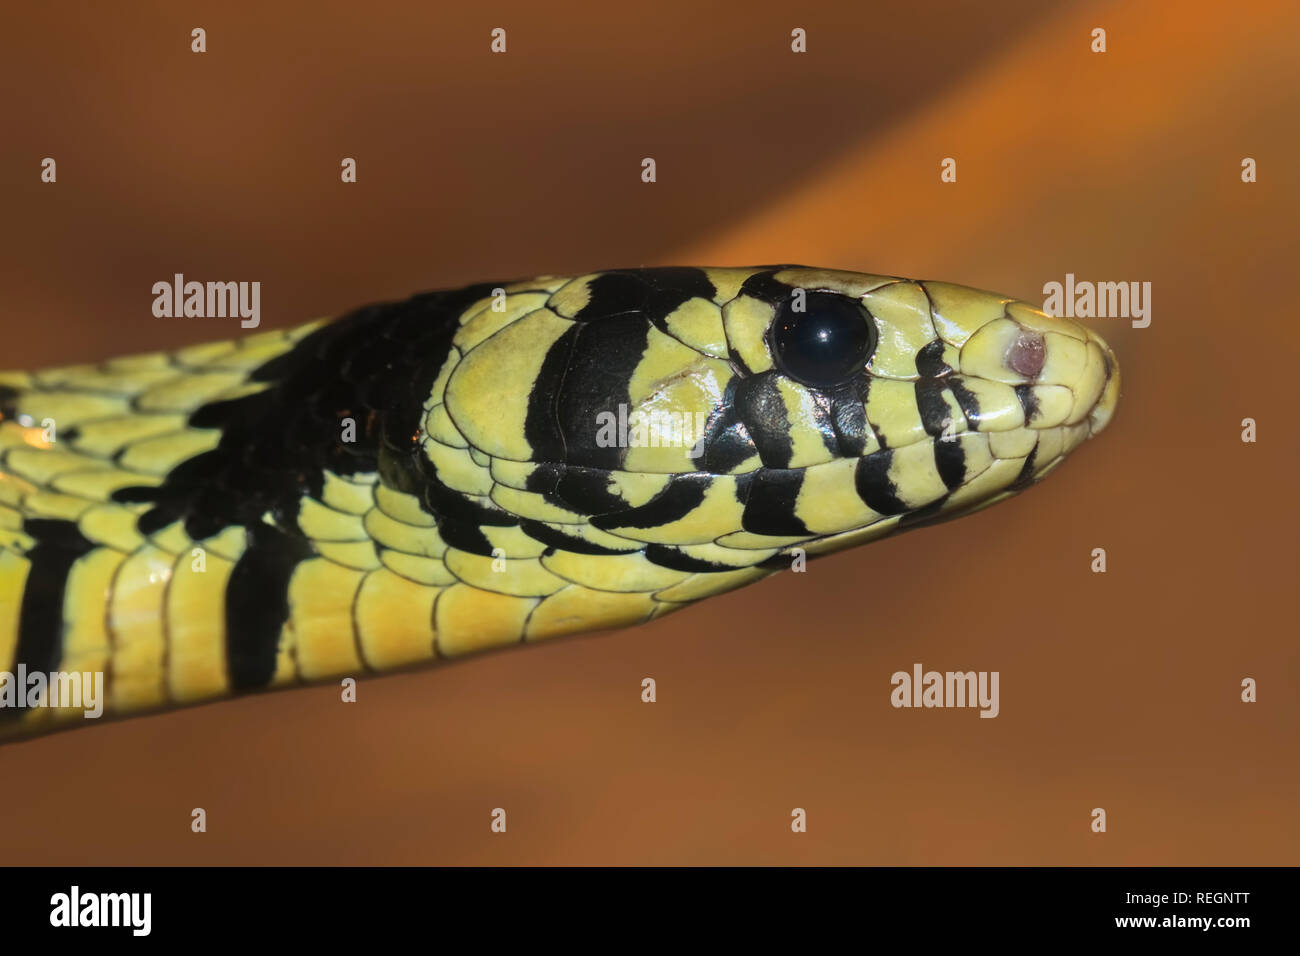 Oriol Spilotes pullatus (serpiente), comúnmente conocida como la serpiente caninana, pollo, rata amarilla serpiente o serpiente tigre Foto de stock